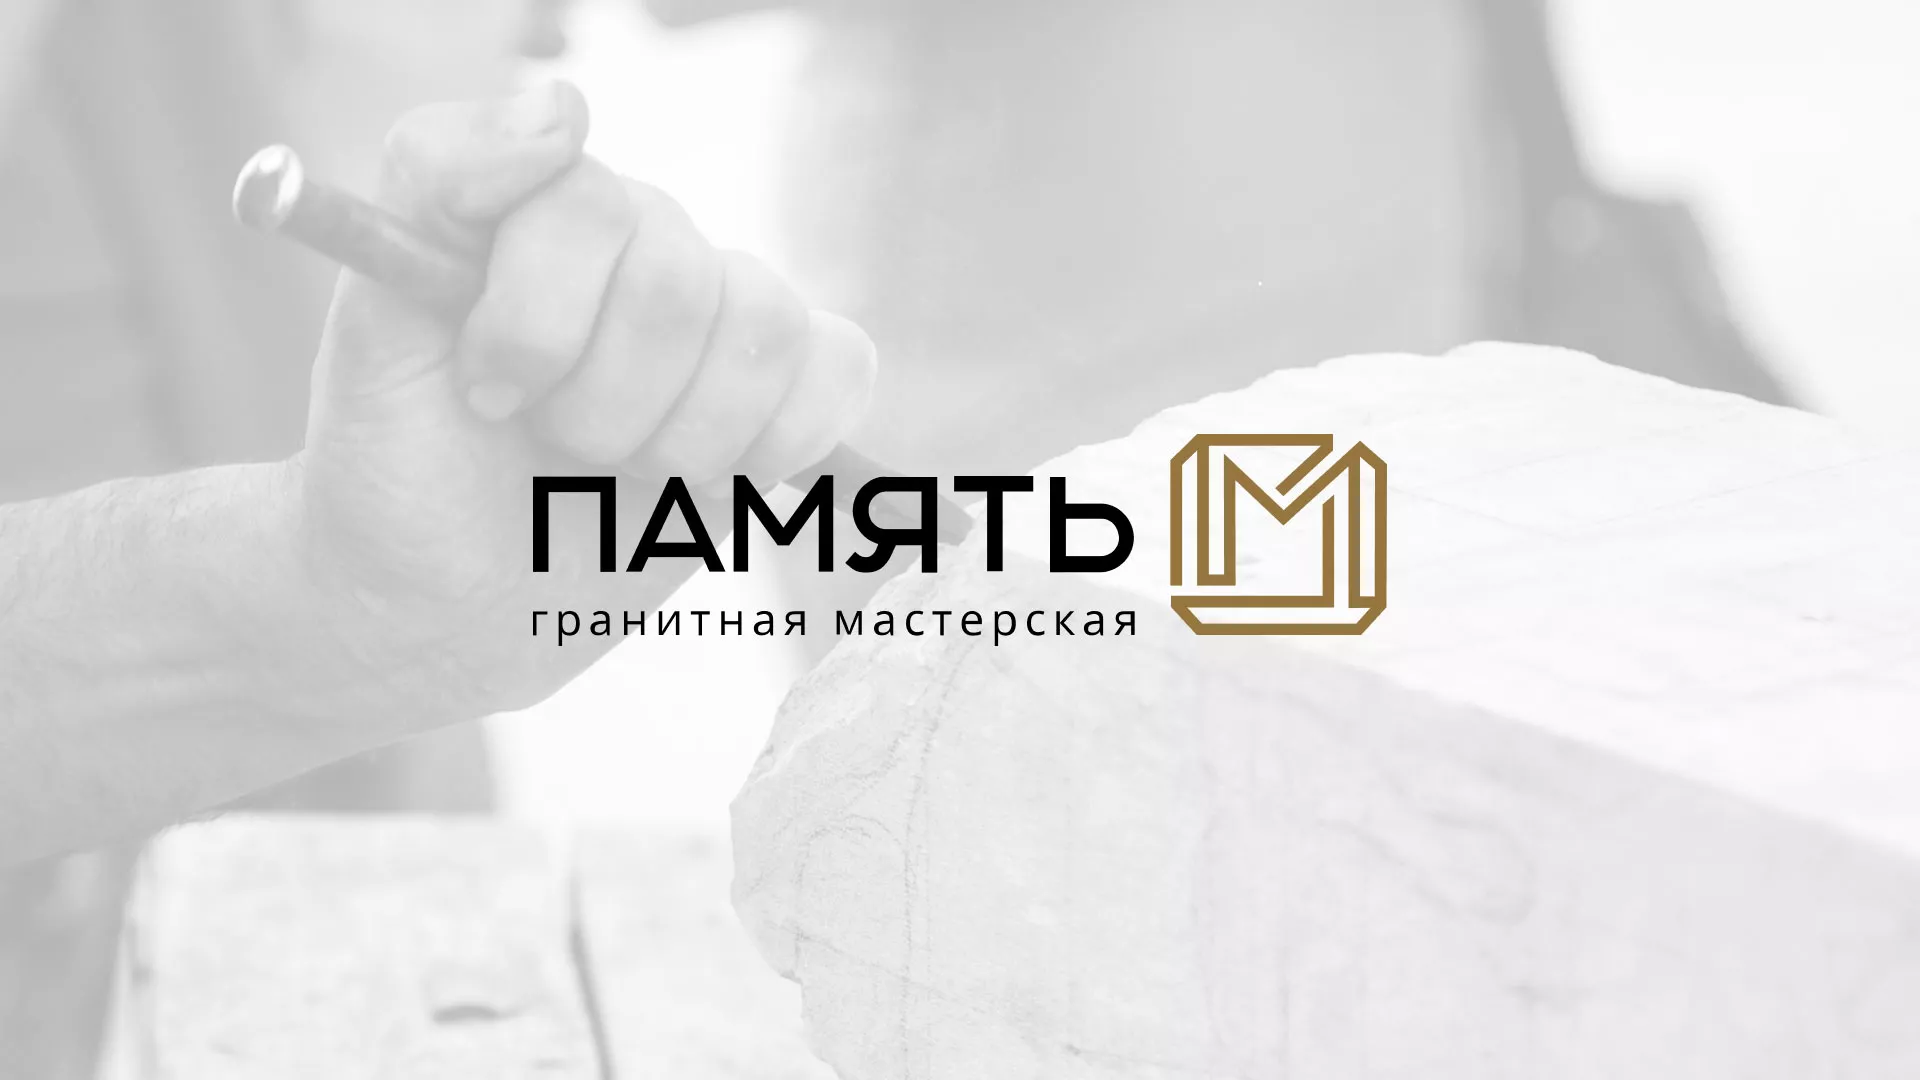 Разработка логотипа и сайта компании «Память-М» в Усть-Джегуте